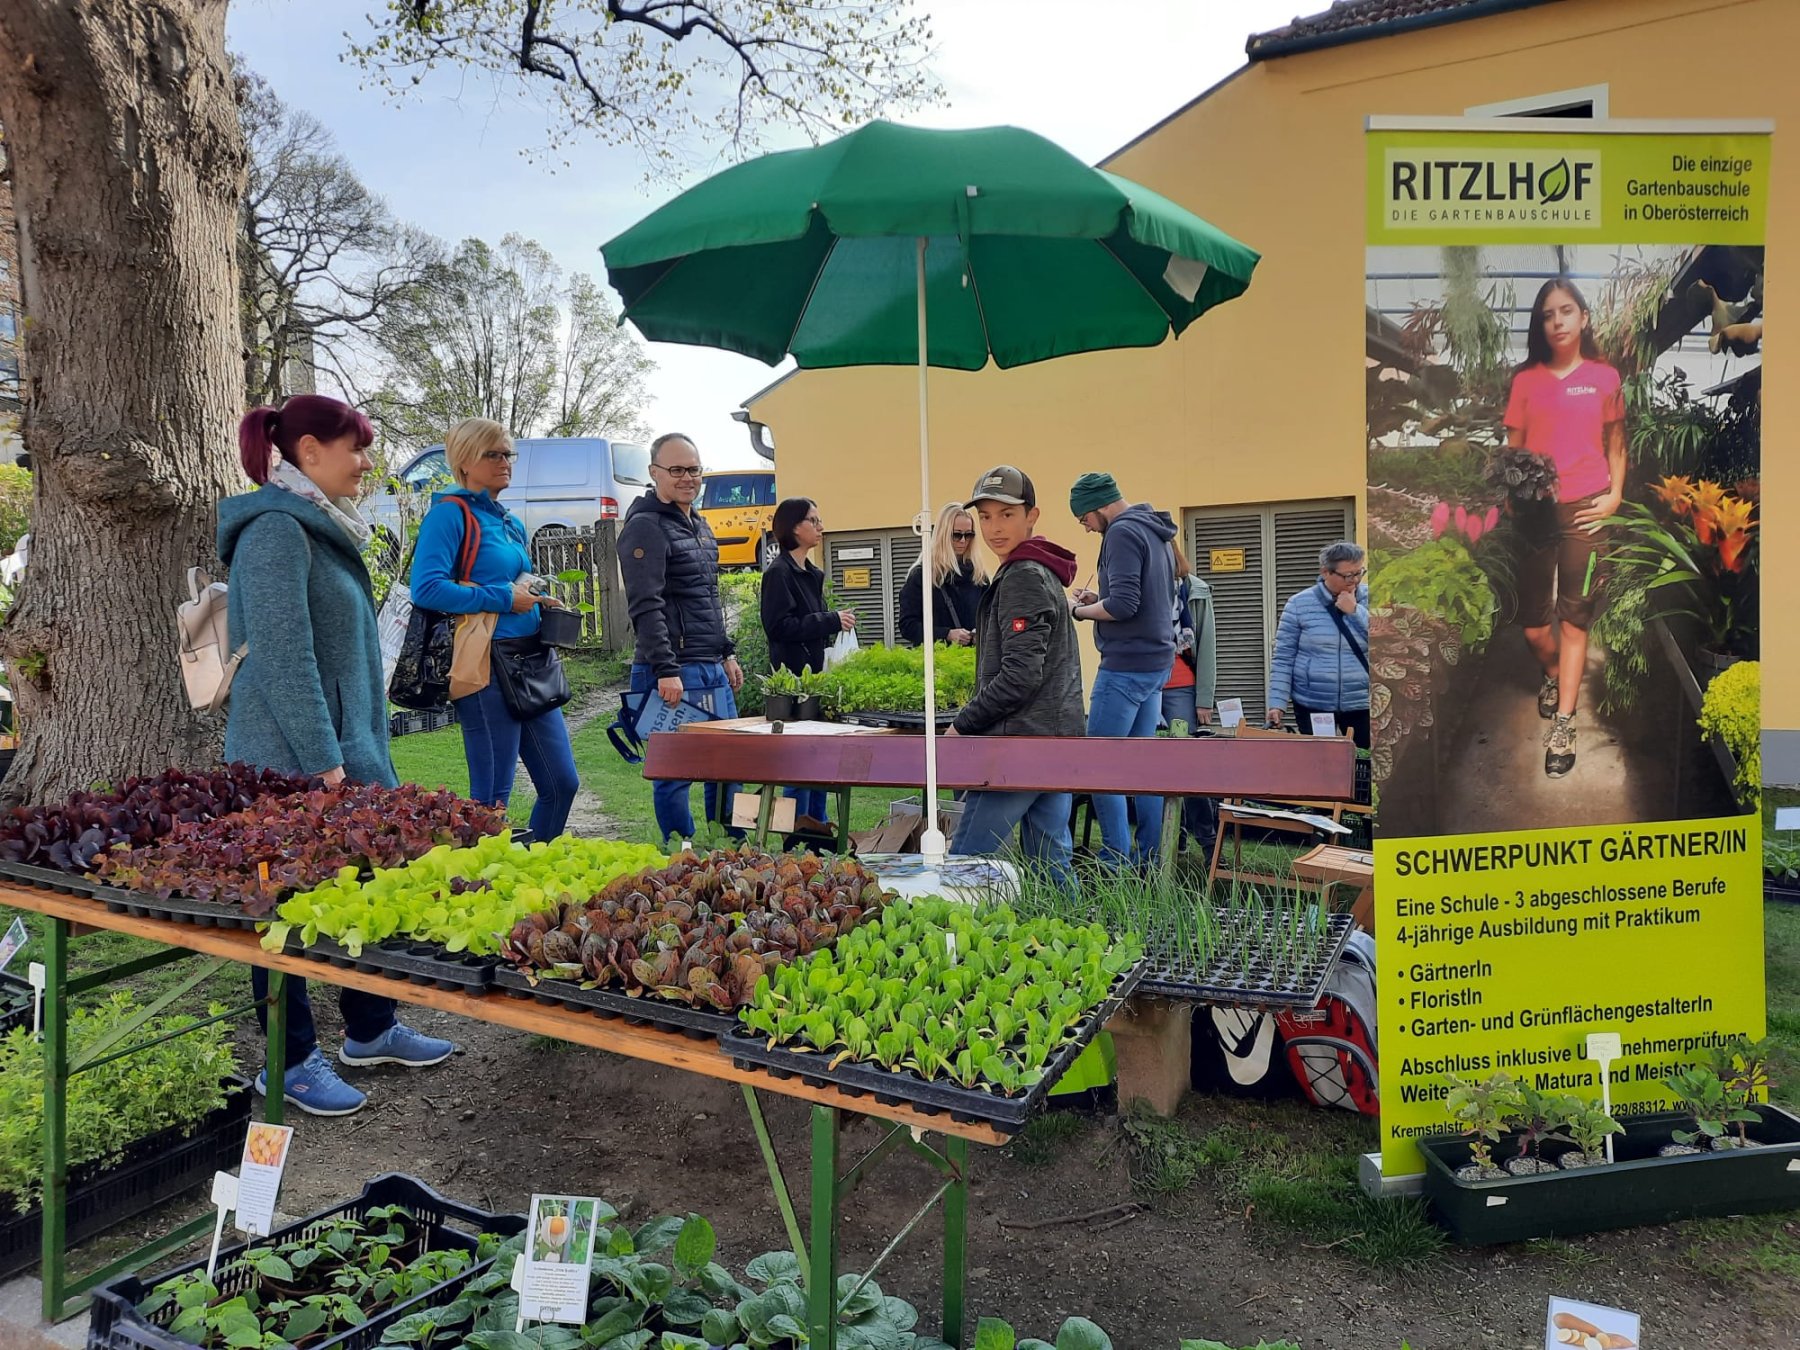 Schüler*innen präsentieren beim "Pflanzerlmarkt" ihre Produkte. Sie verkaufen unter anderem verschiedene Salatpflanzen